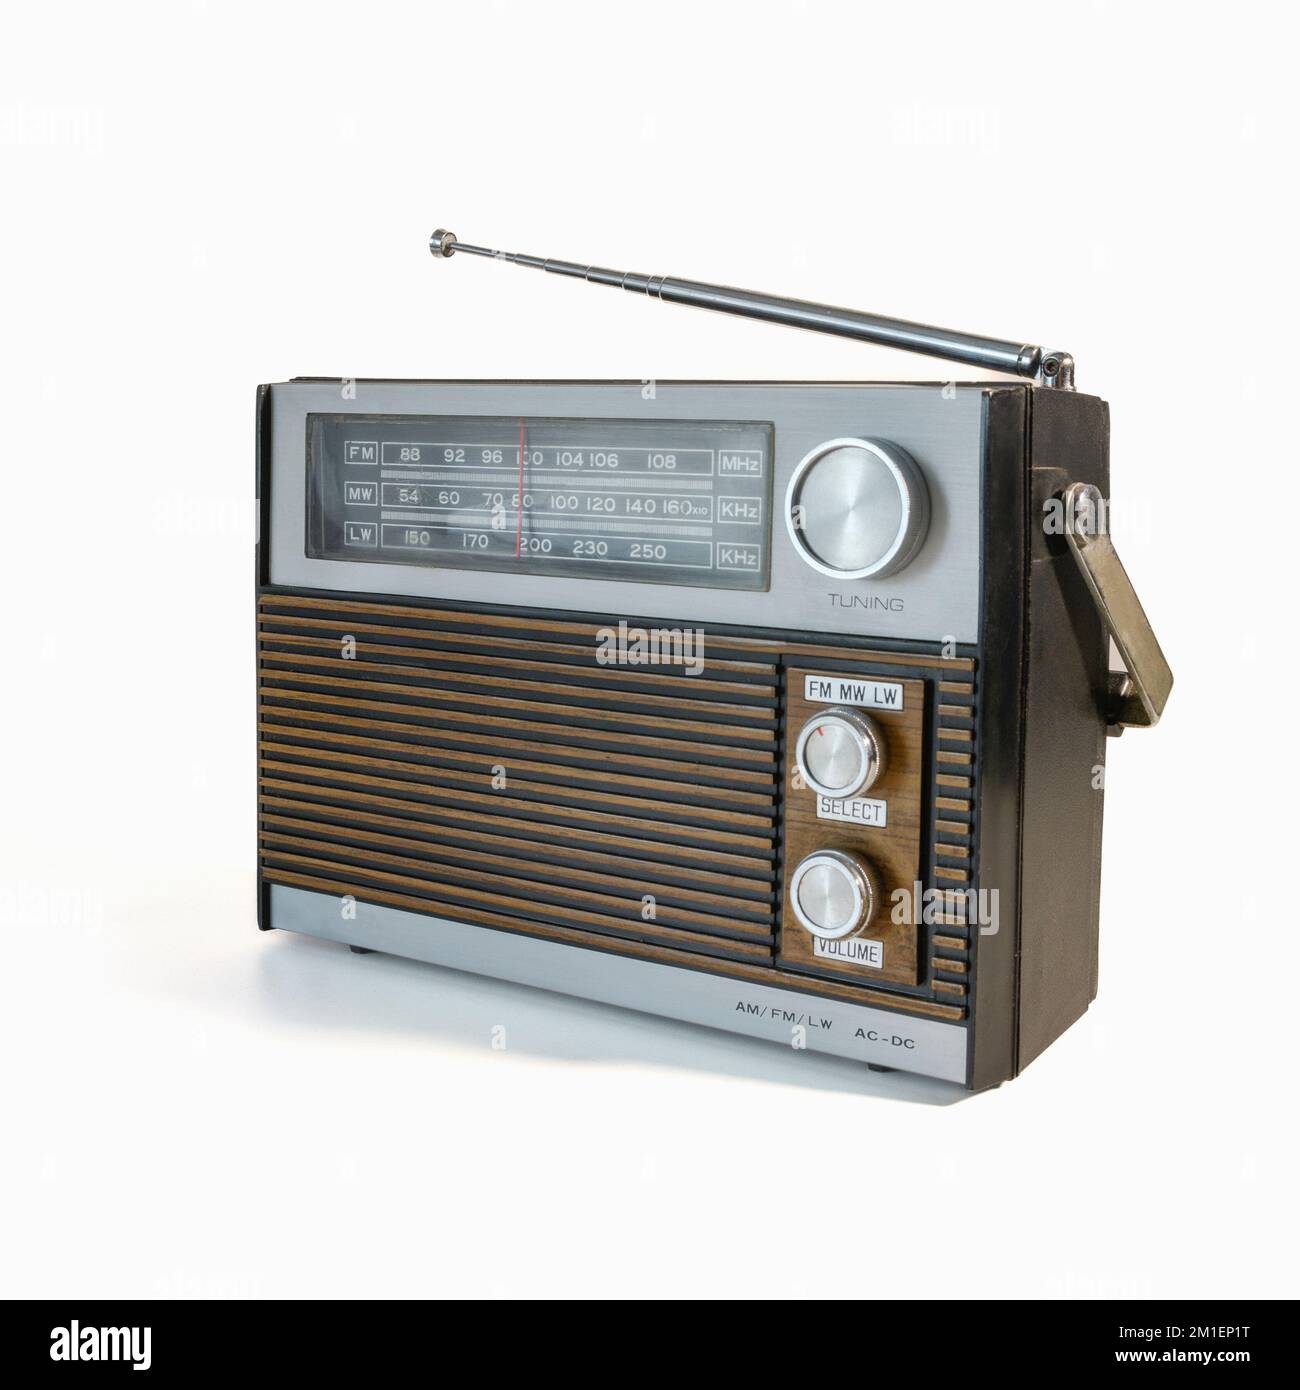 Ricevitore radio posteriore del 70s. Isolato su sfondo bianco. Tracce di tempo e abrasioni sul corpo Foto Stock